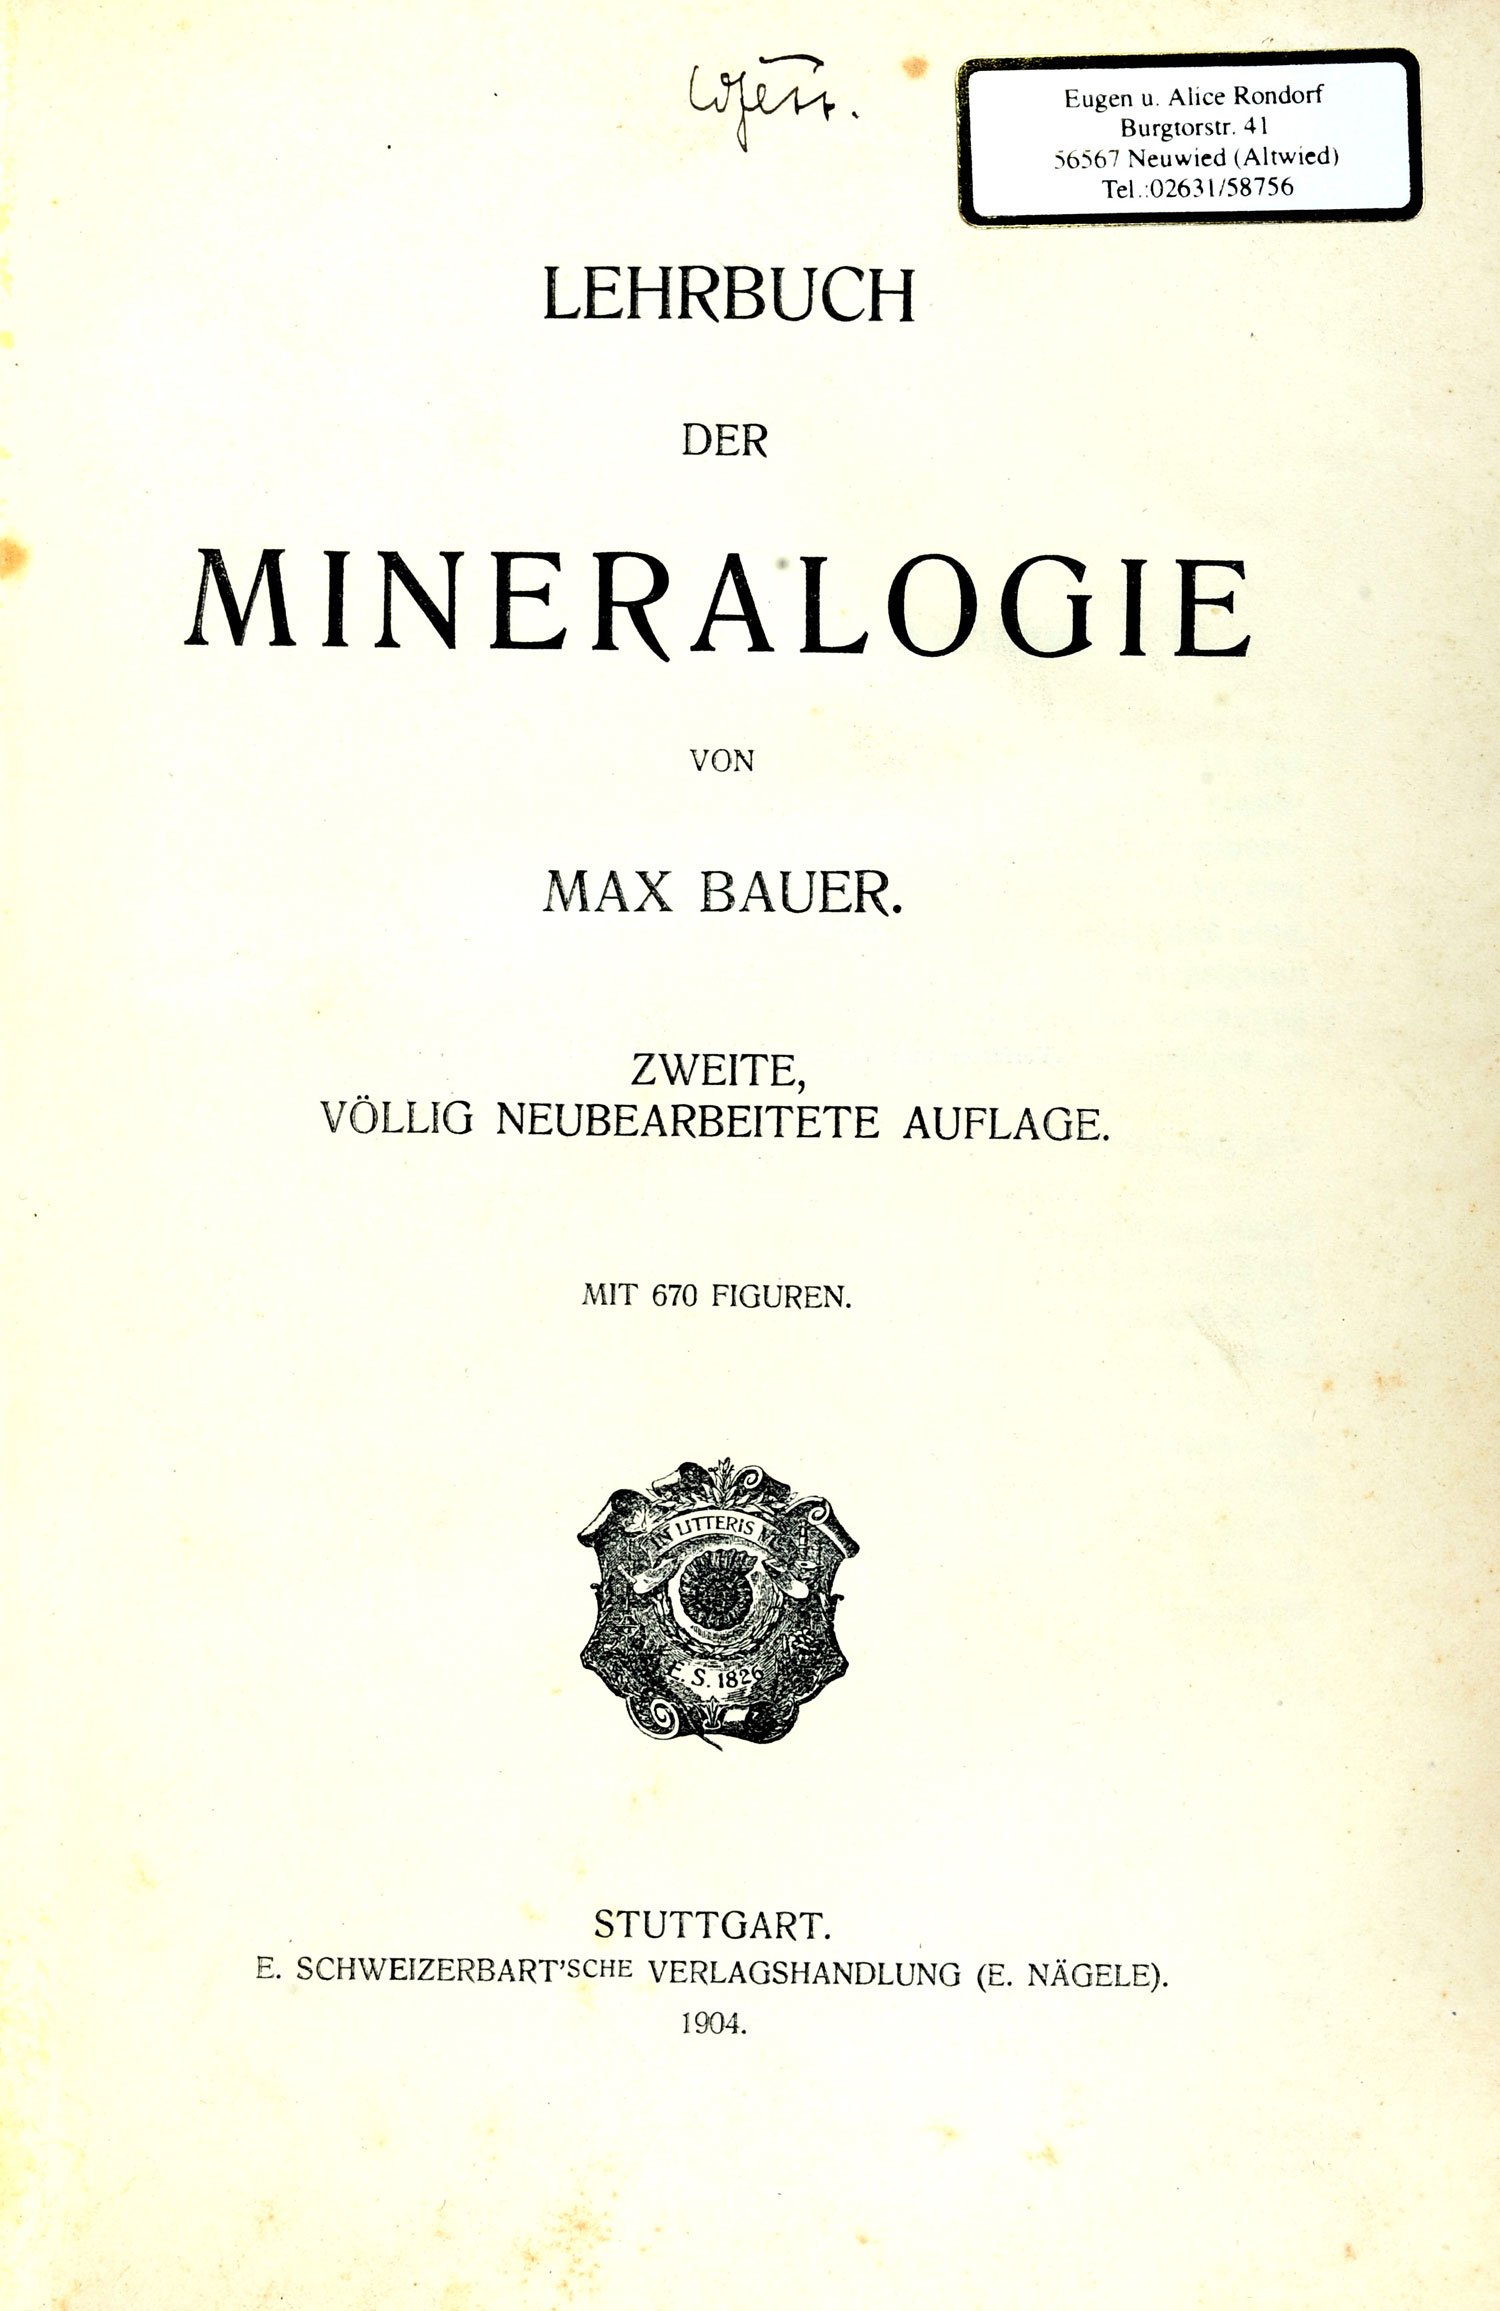 Bauer, Max Hermann (1904)